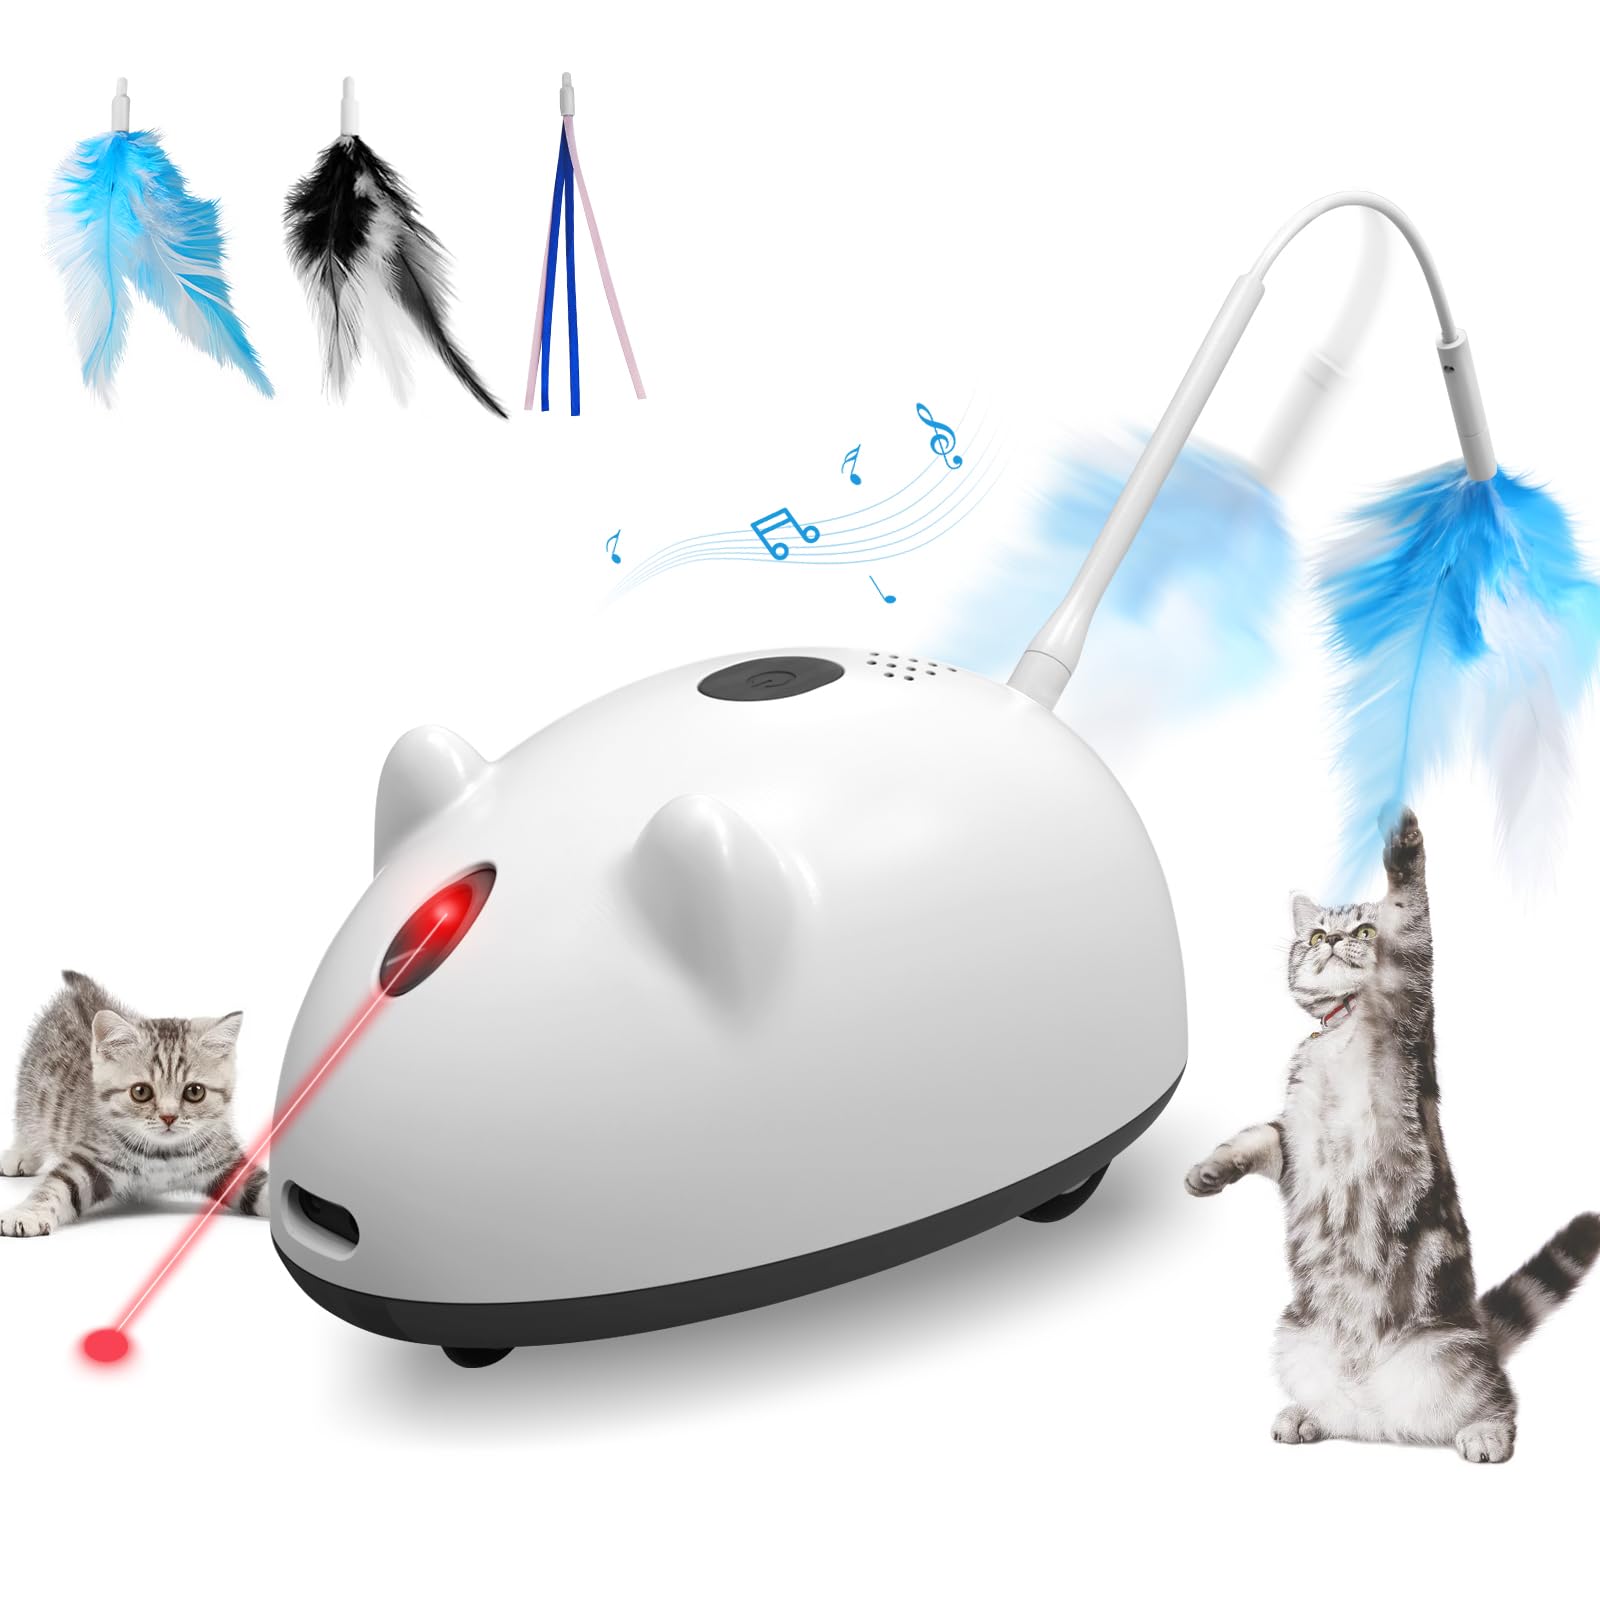 電動ネズミ 猫 玩具 自動 レッドポインター LEDライト ねずみの鳴き声 猫じゃらし ランダム移動 Type-C充電 障害物回避 3段階調節 最大6時間連続使用 ストレス解消 運動不足対策